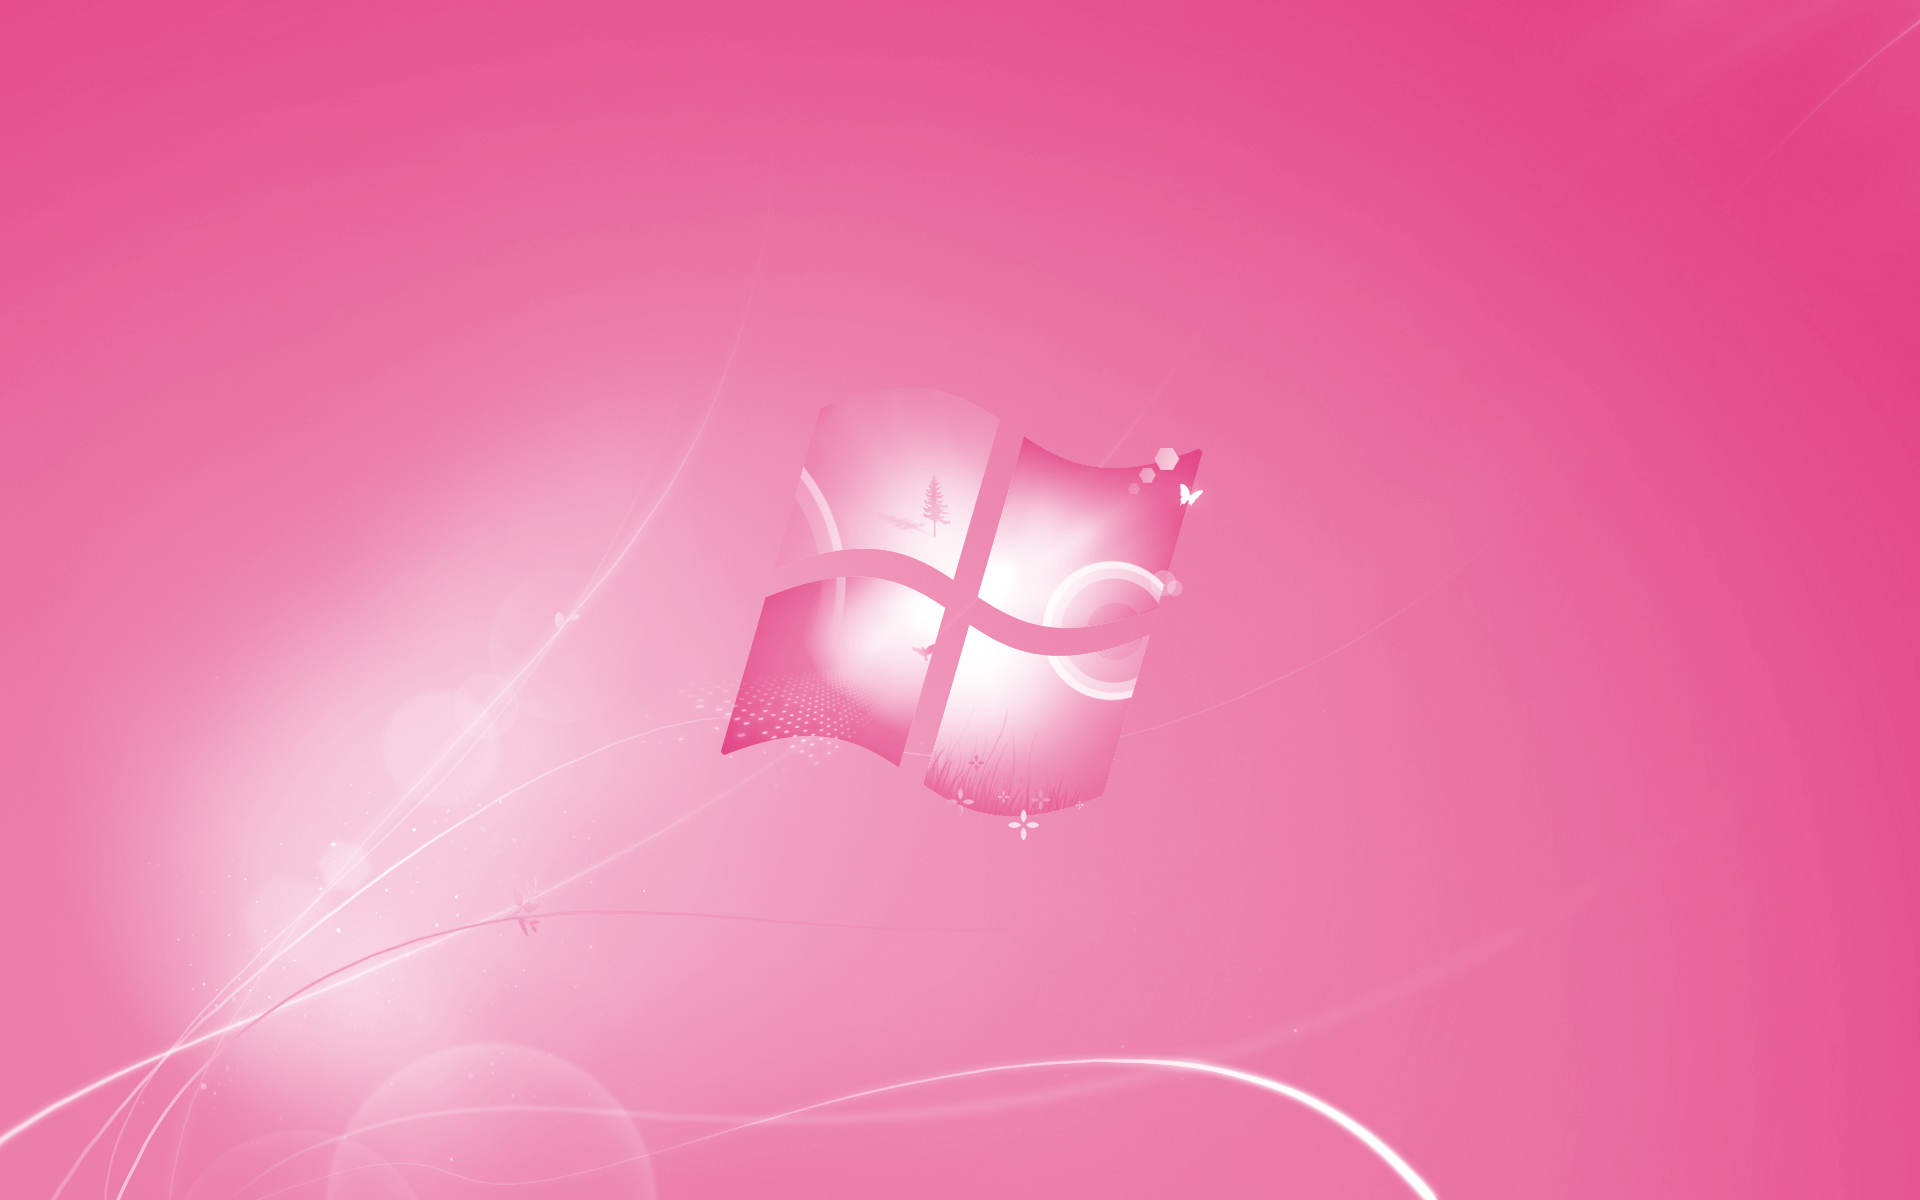 Hình nền Windows 7 màu hồng là một trong những mẫu nền đẹp và độc đáo nhất. Sự kết hợp giữa sắc hồng và họa tiết phối màu hiện đại, tạo nên một không gian làm việc tràn đầy năng lượng và cá tính. Nếu bạn muốn thay đổi không gian làm việc của mình, hãy tải về ngay hình nền Windows 7 màu hồng này.